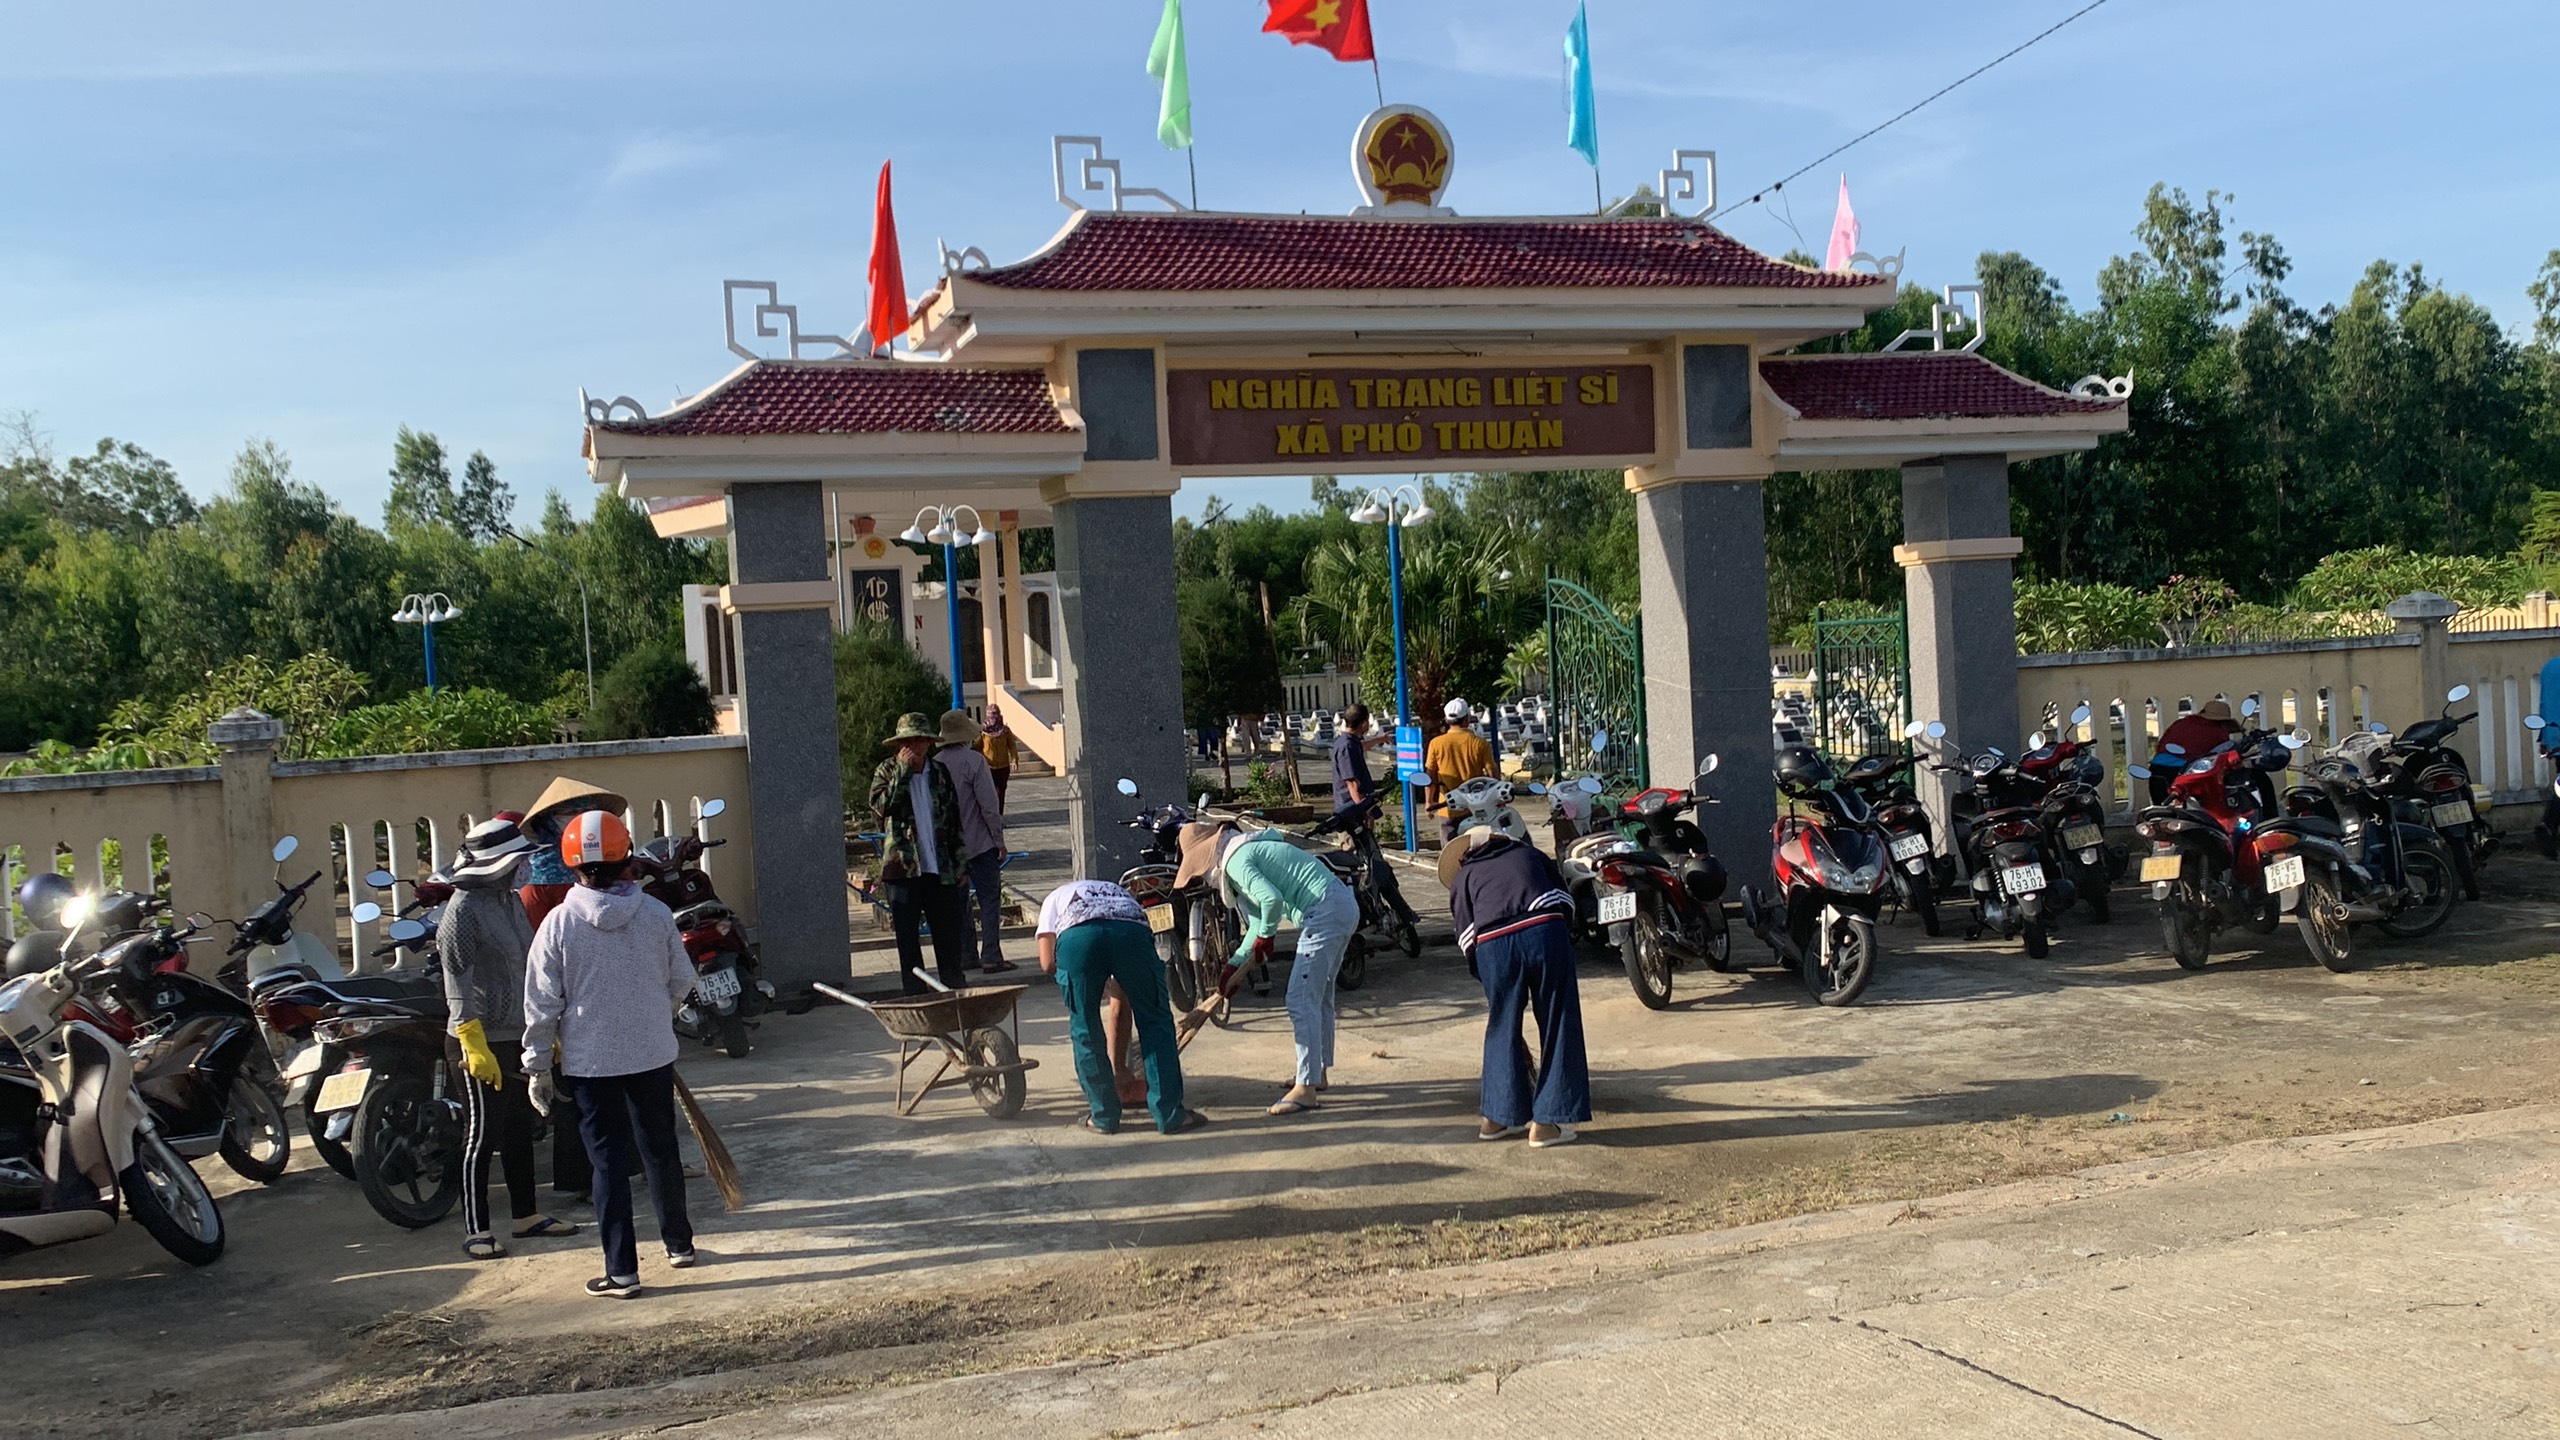 Ủy ban nhân dân xã phối hợp với Cụm công đoàn cơ sở xã Phổ Thuận tổ chức ra quân dọn vệ sinh Nghĩa trang Liệt sĩ xã Phổ Thuận